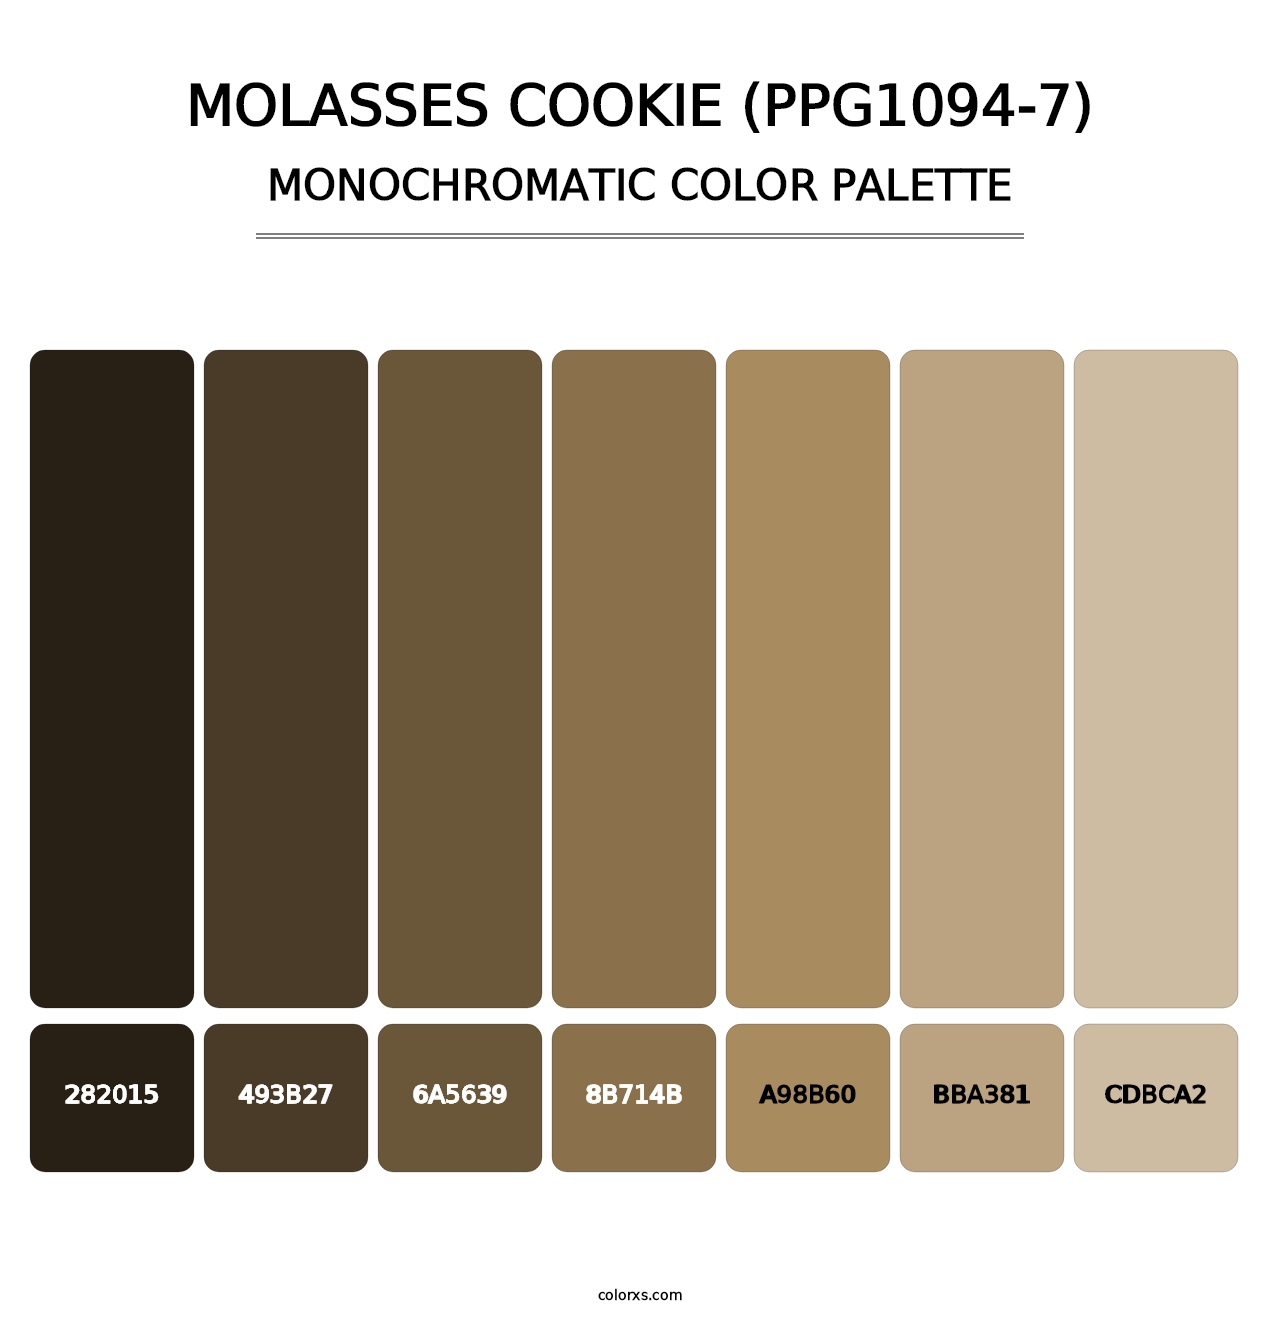 Molasses Cookie (PPG1094-7) - Monochromatic Color Palette